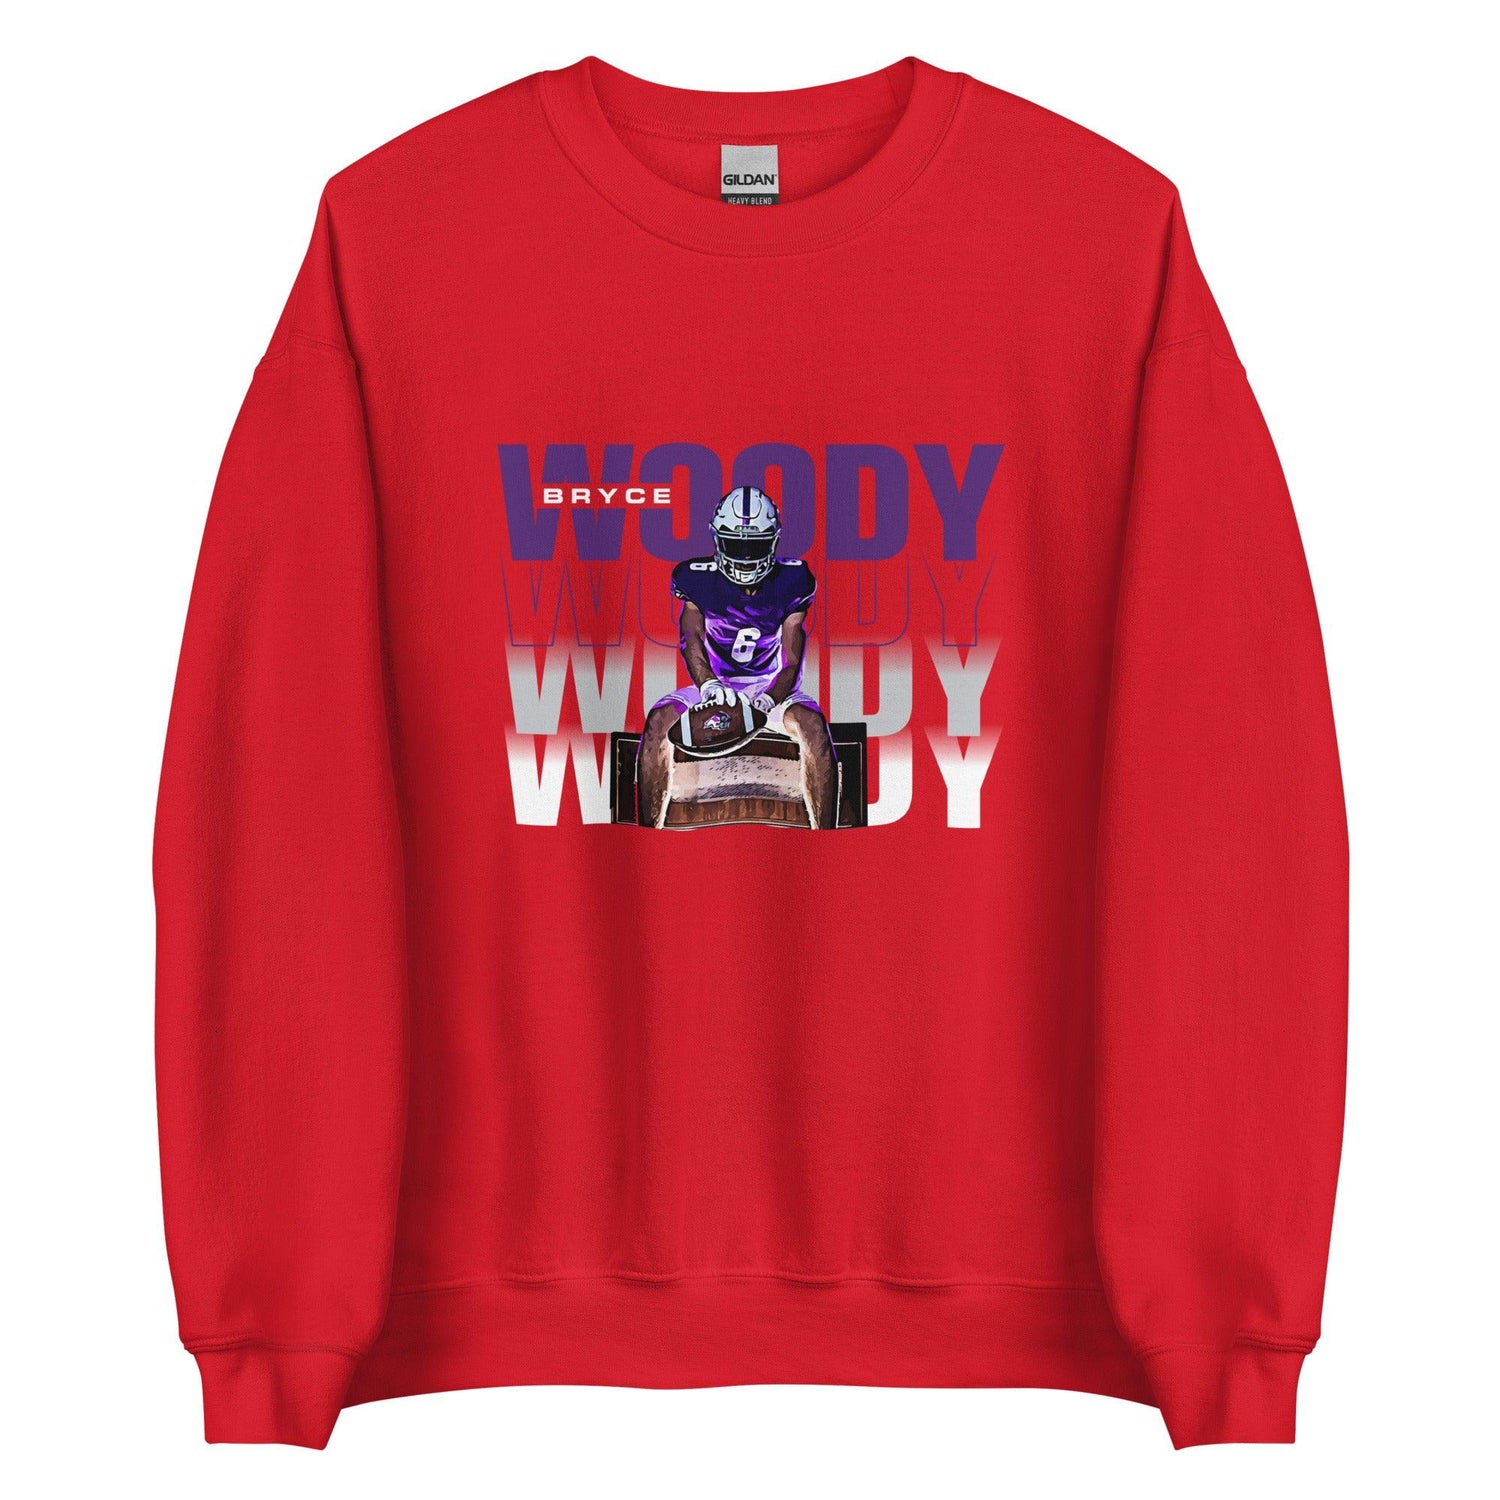 Bryce Woody "Gameday" Sweatshirt - Fan Arch